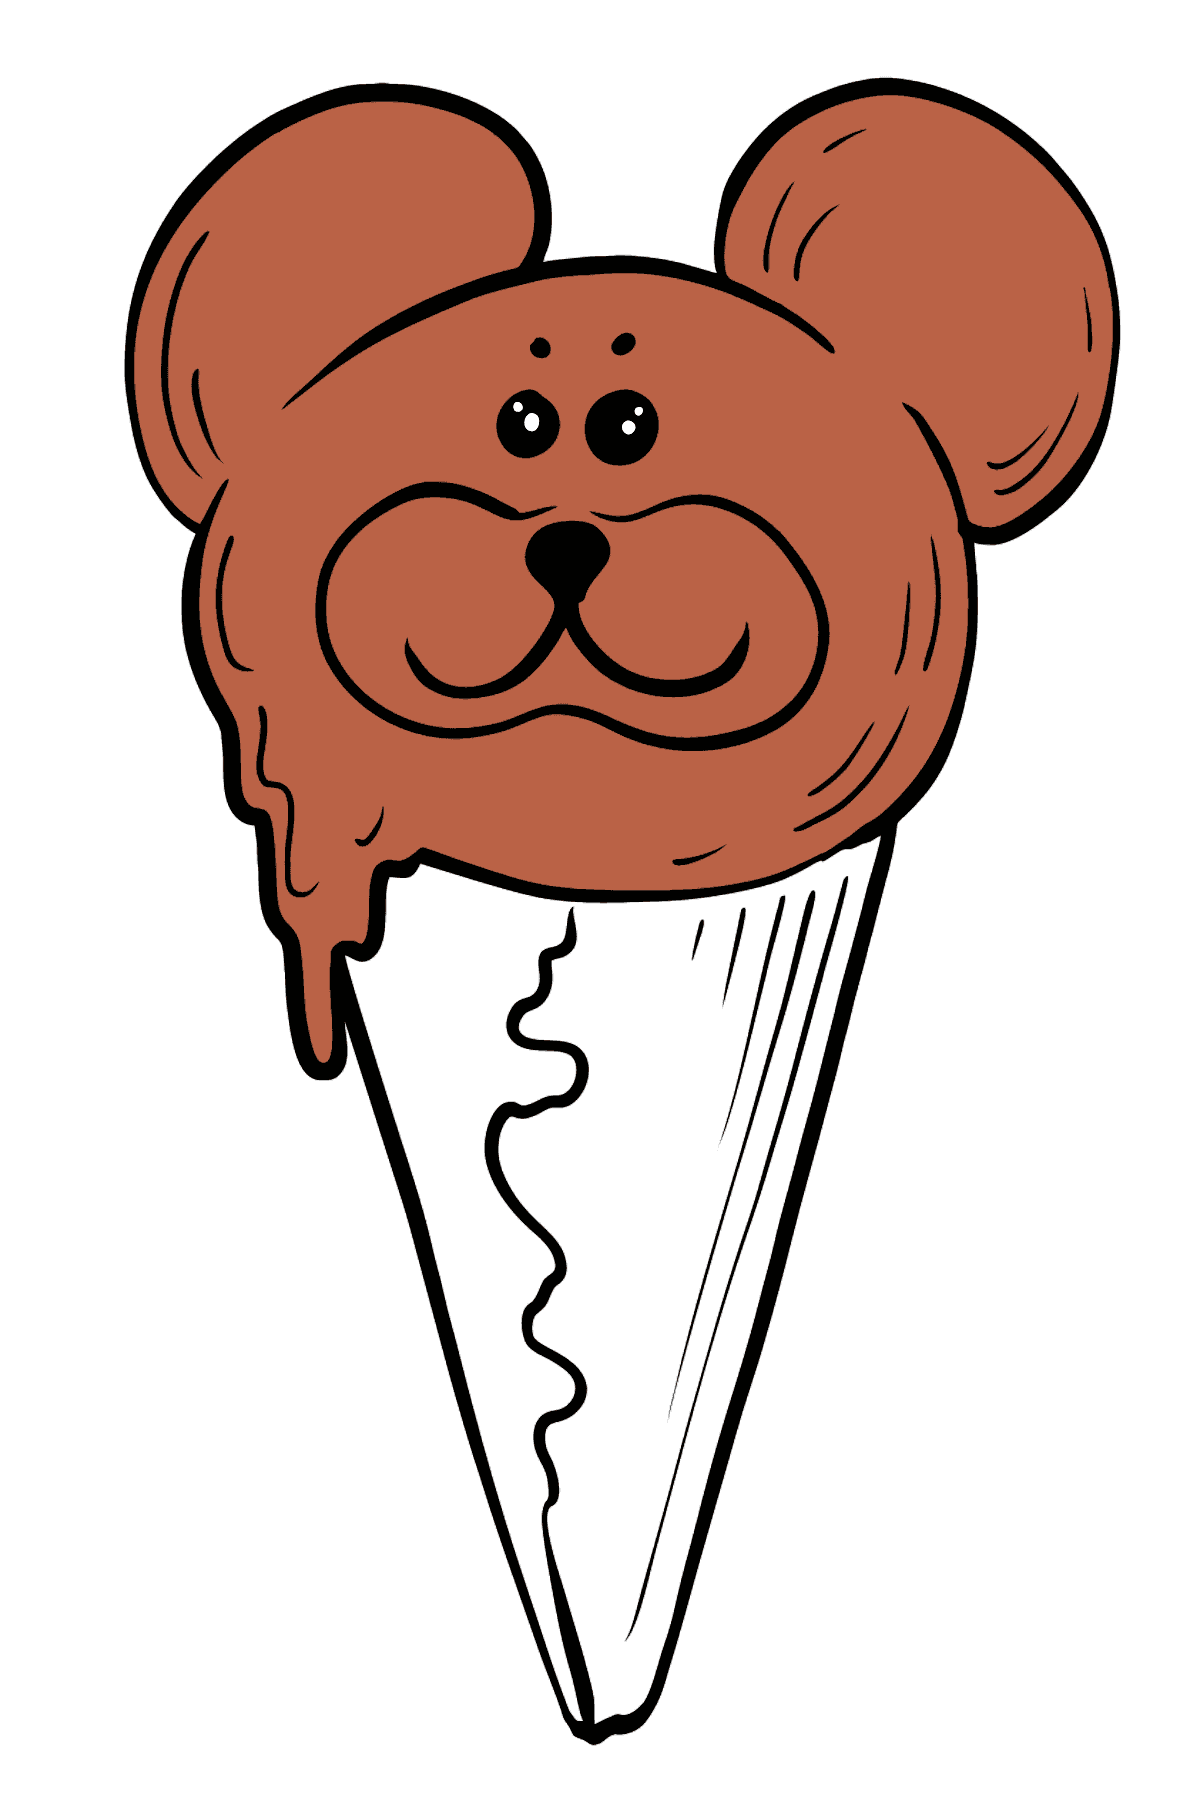 Boyama sayfası çikolatalı dondurma - Boyamalar çocuklar için